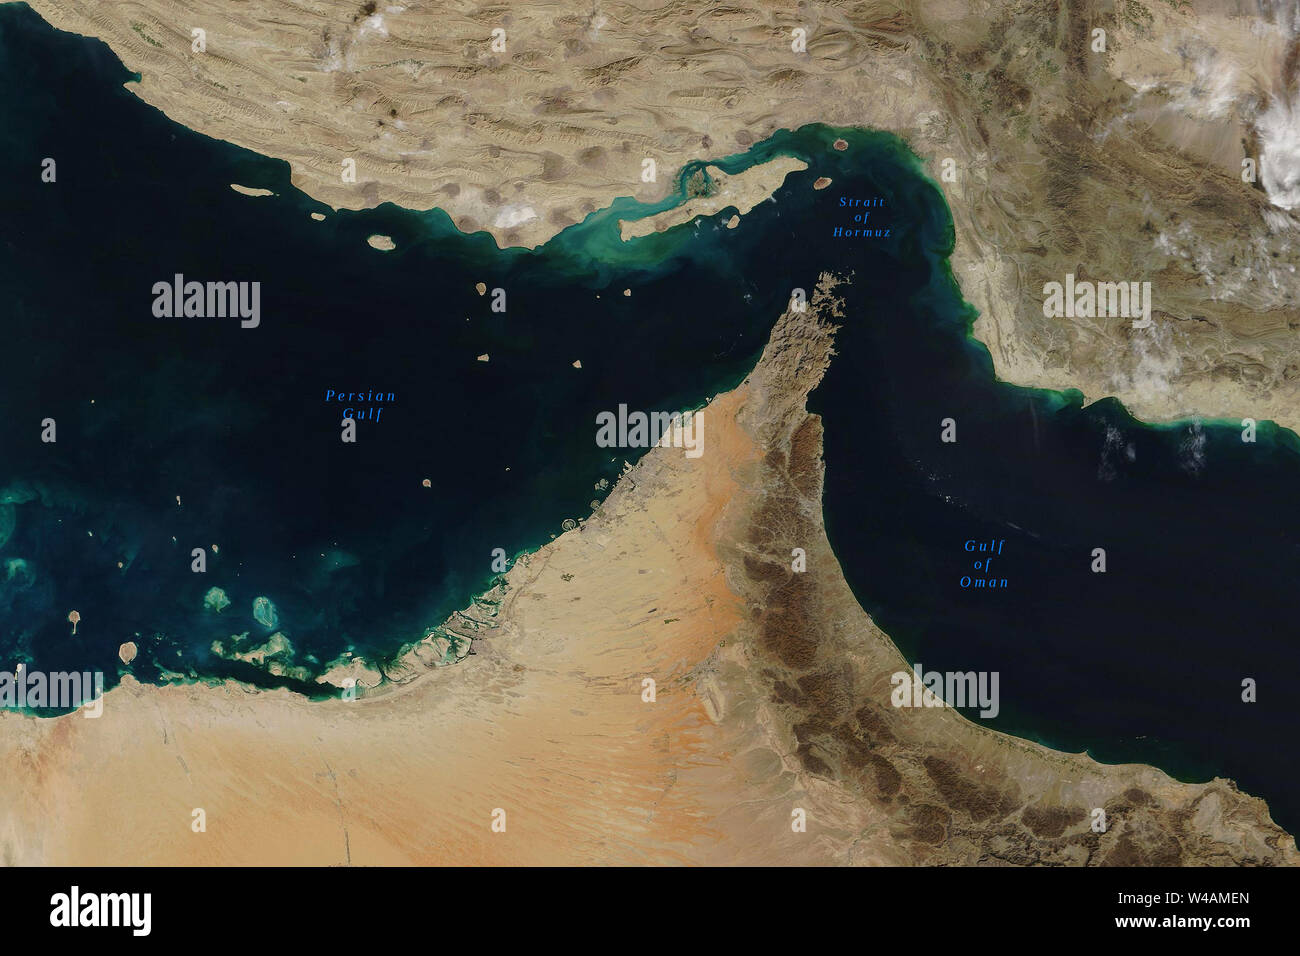 Straße von Hormus, eine Meerenge zwischen dem Persischen Golf und dem Golf von Oman, vom Weltraum aus gesehen - Elemente dieses Bild von der NASA eingerichtet Stockfoto